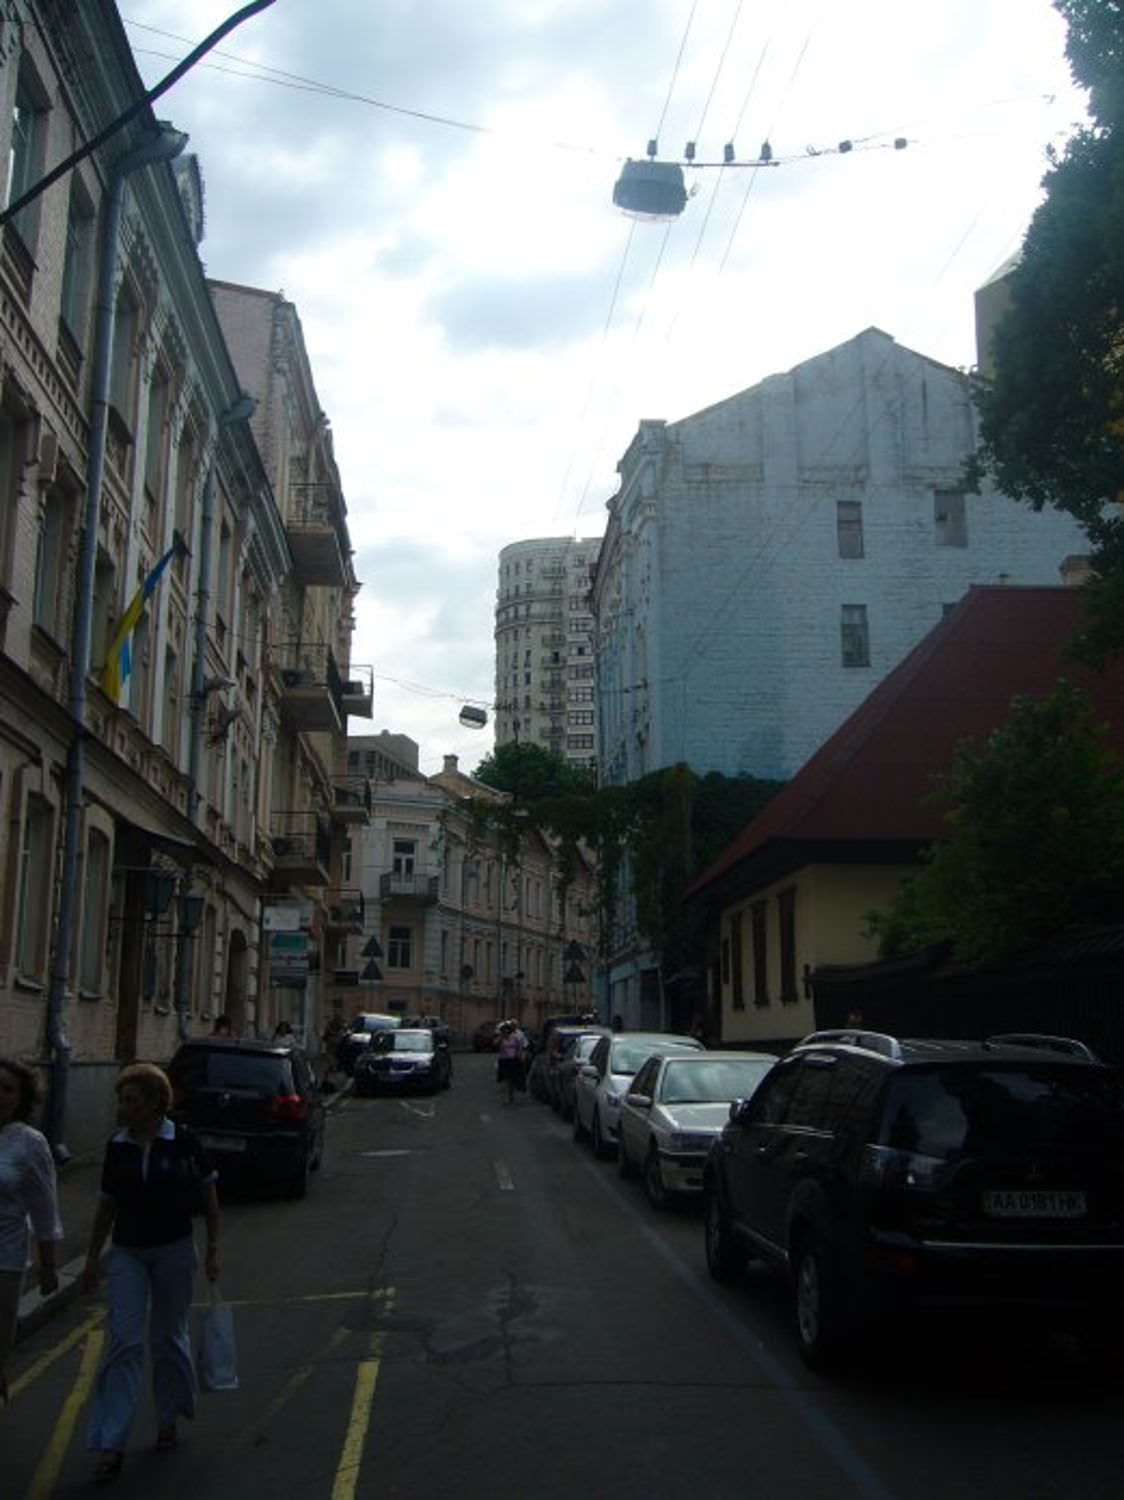 Мирный Киев летом 2010 года. Часть 6. Крещатик, Майдан и красивые улицы.